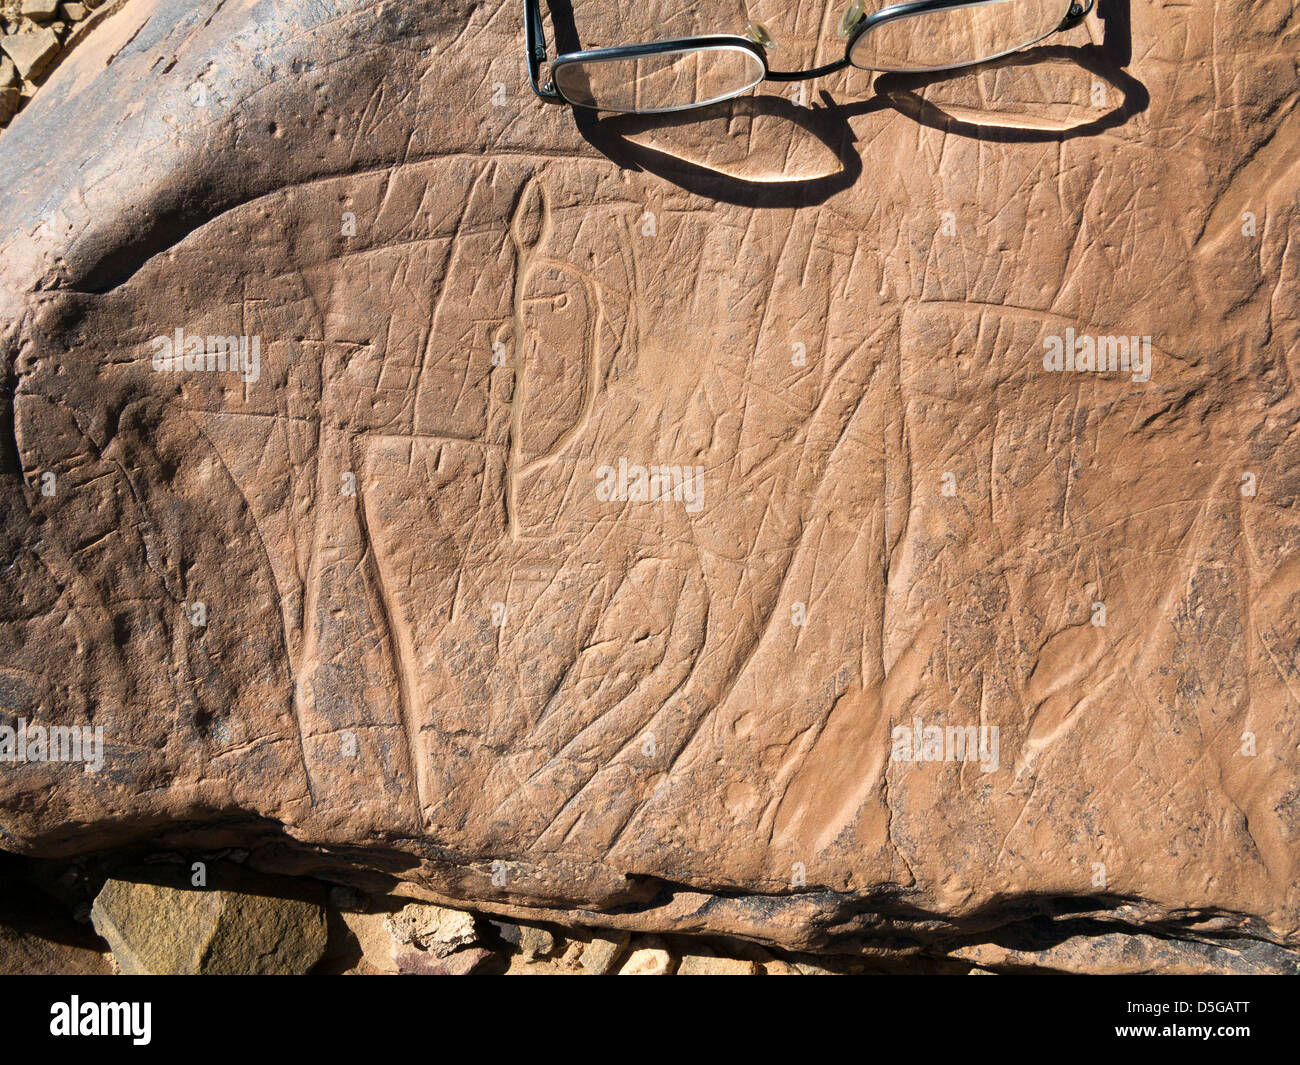 Occhiali preistorica scolpite incisioni rupestri che mostra scala a Oued Mestakou sulla Tata ad Akka road in Marocco. Foto Stock